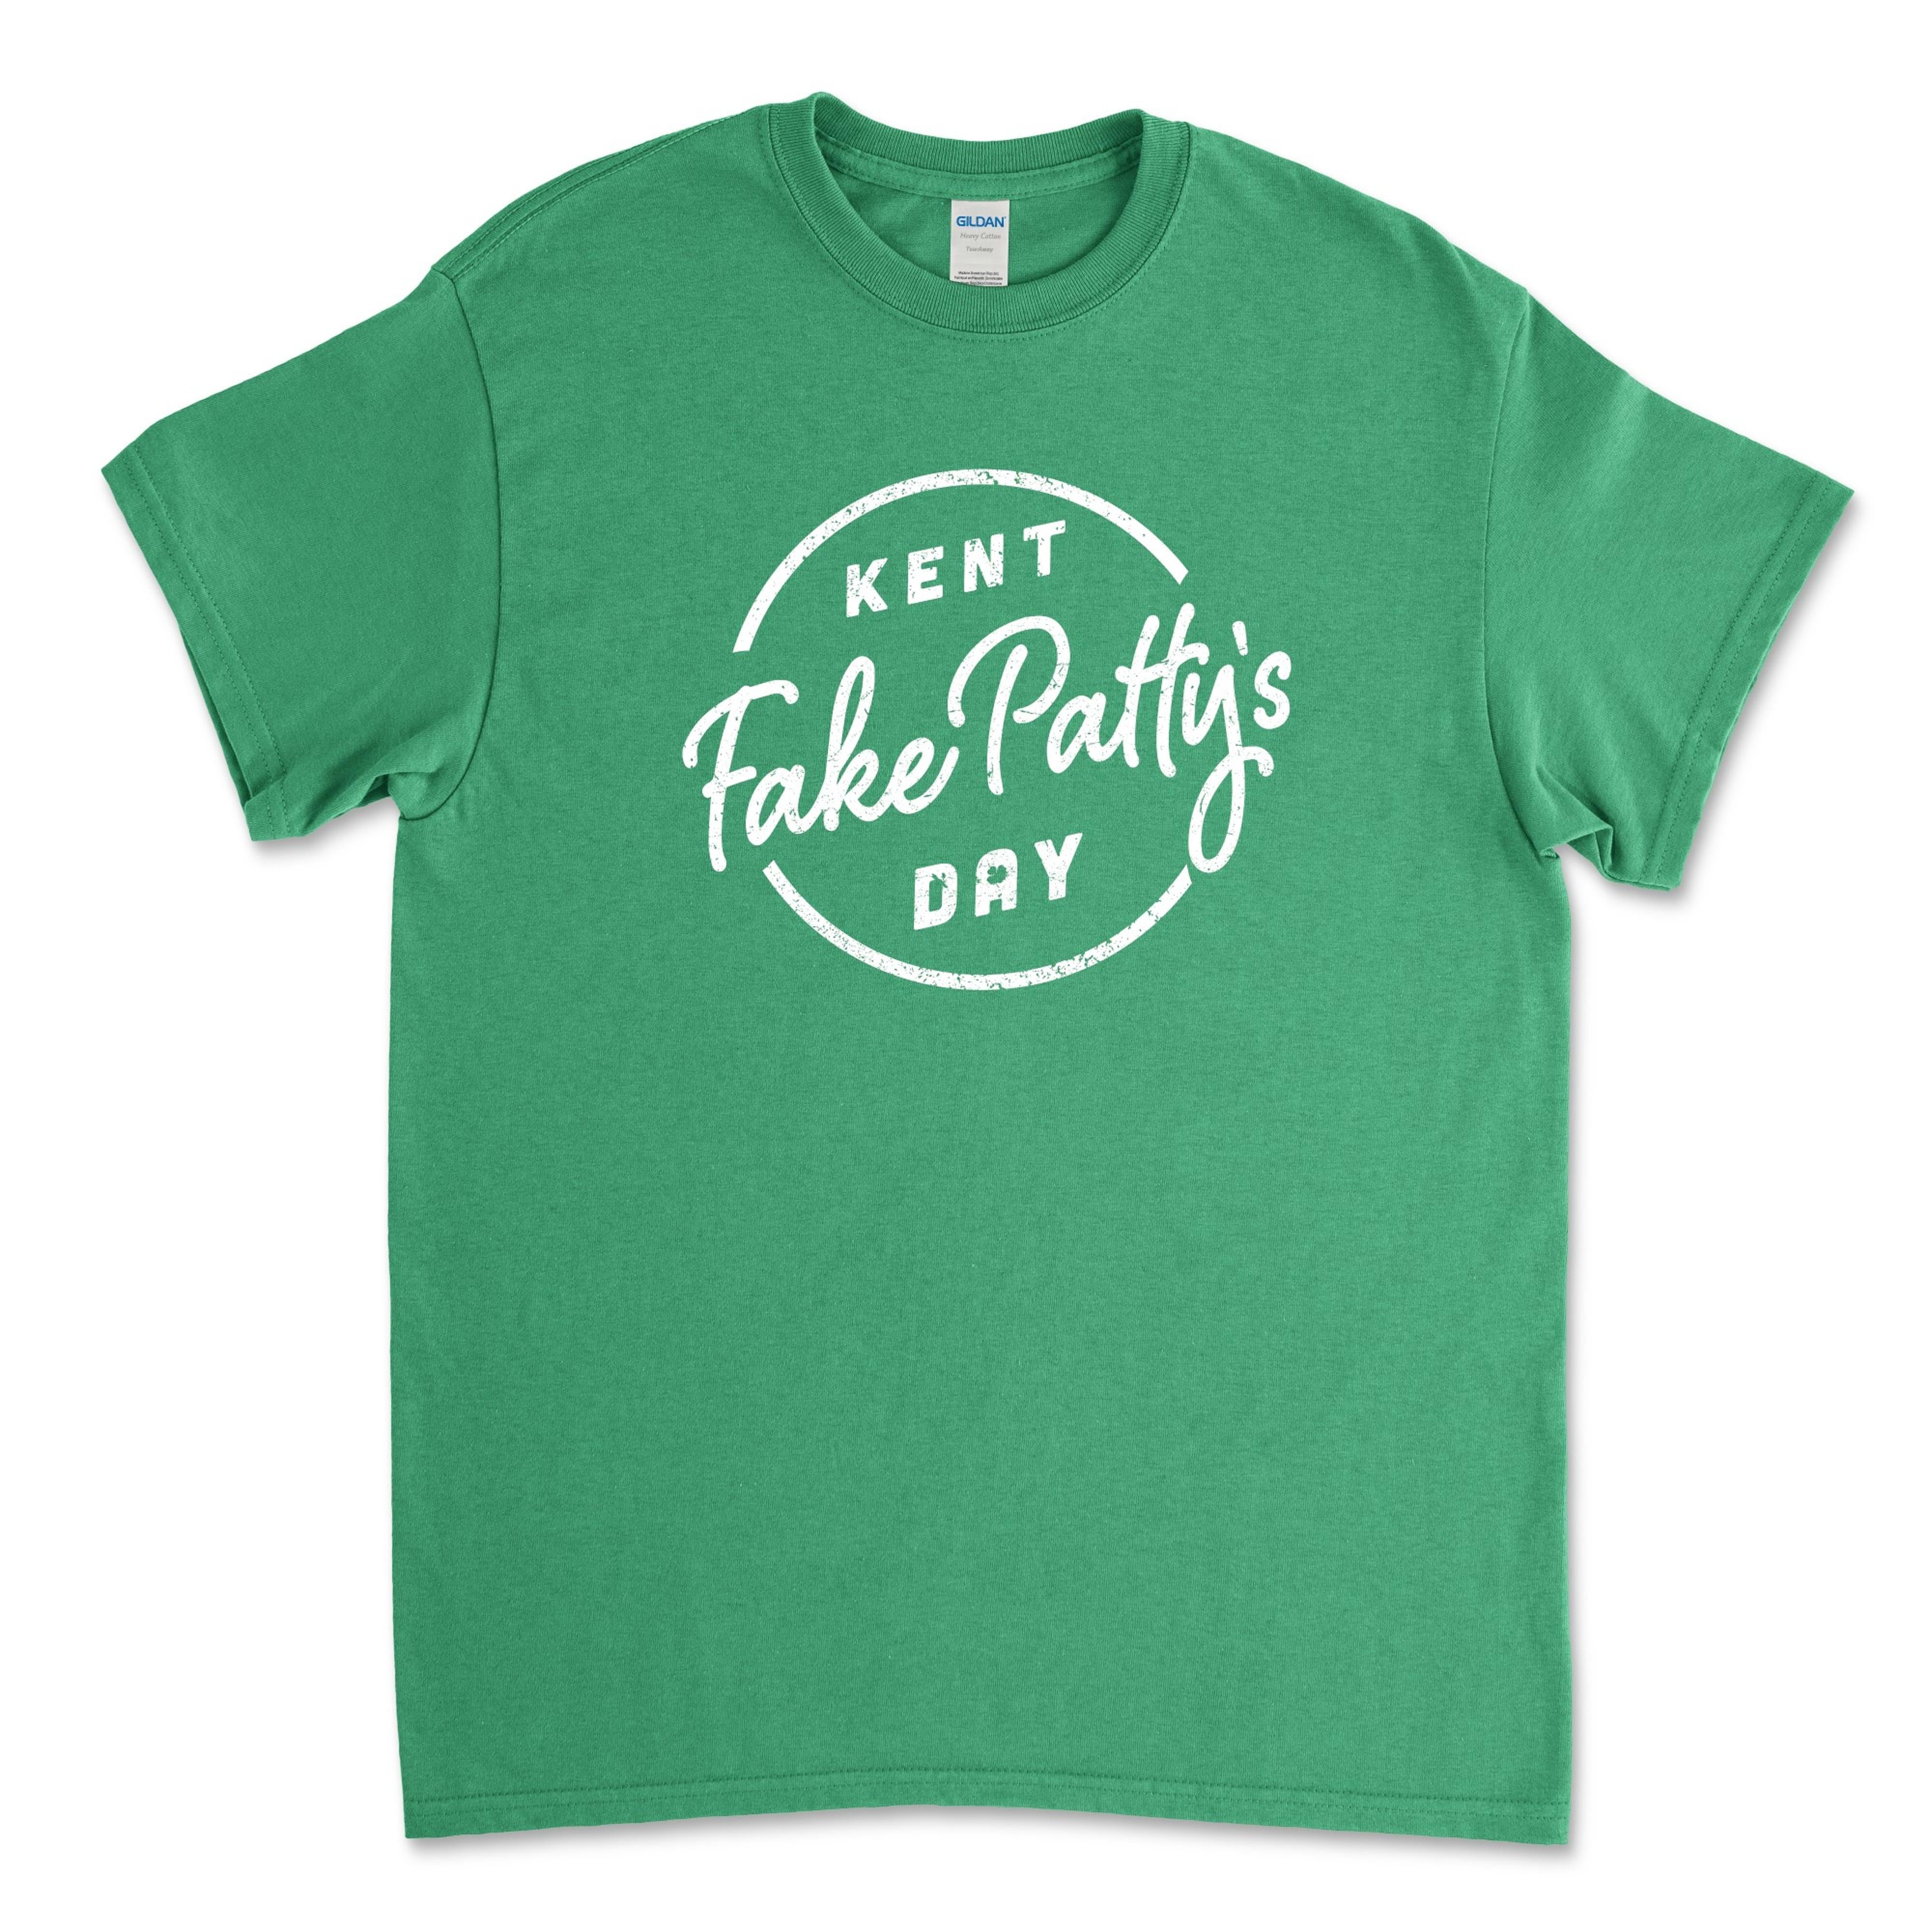 Kent Fake Pattys Day T-Shirt